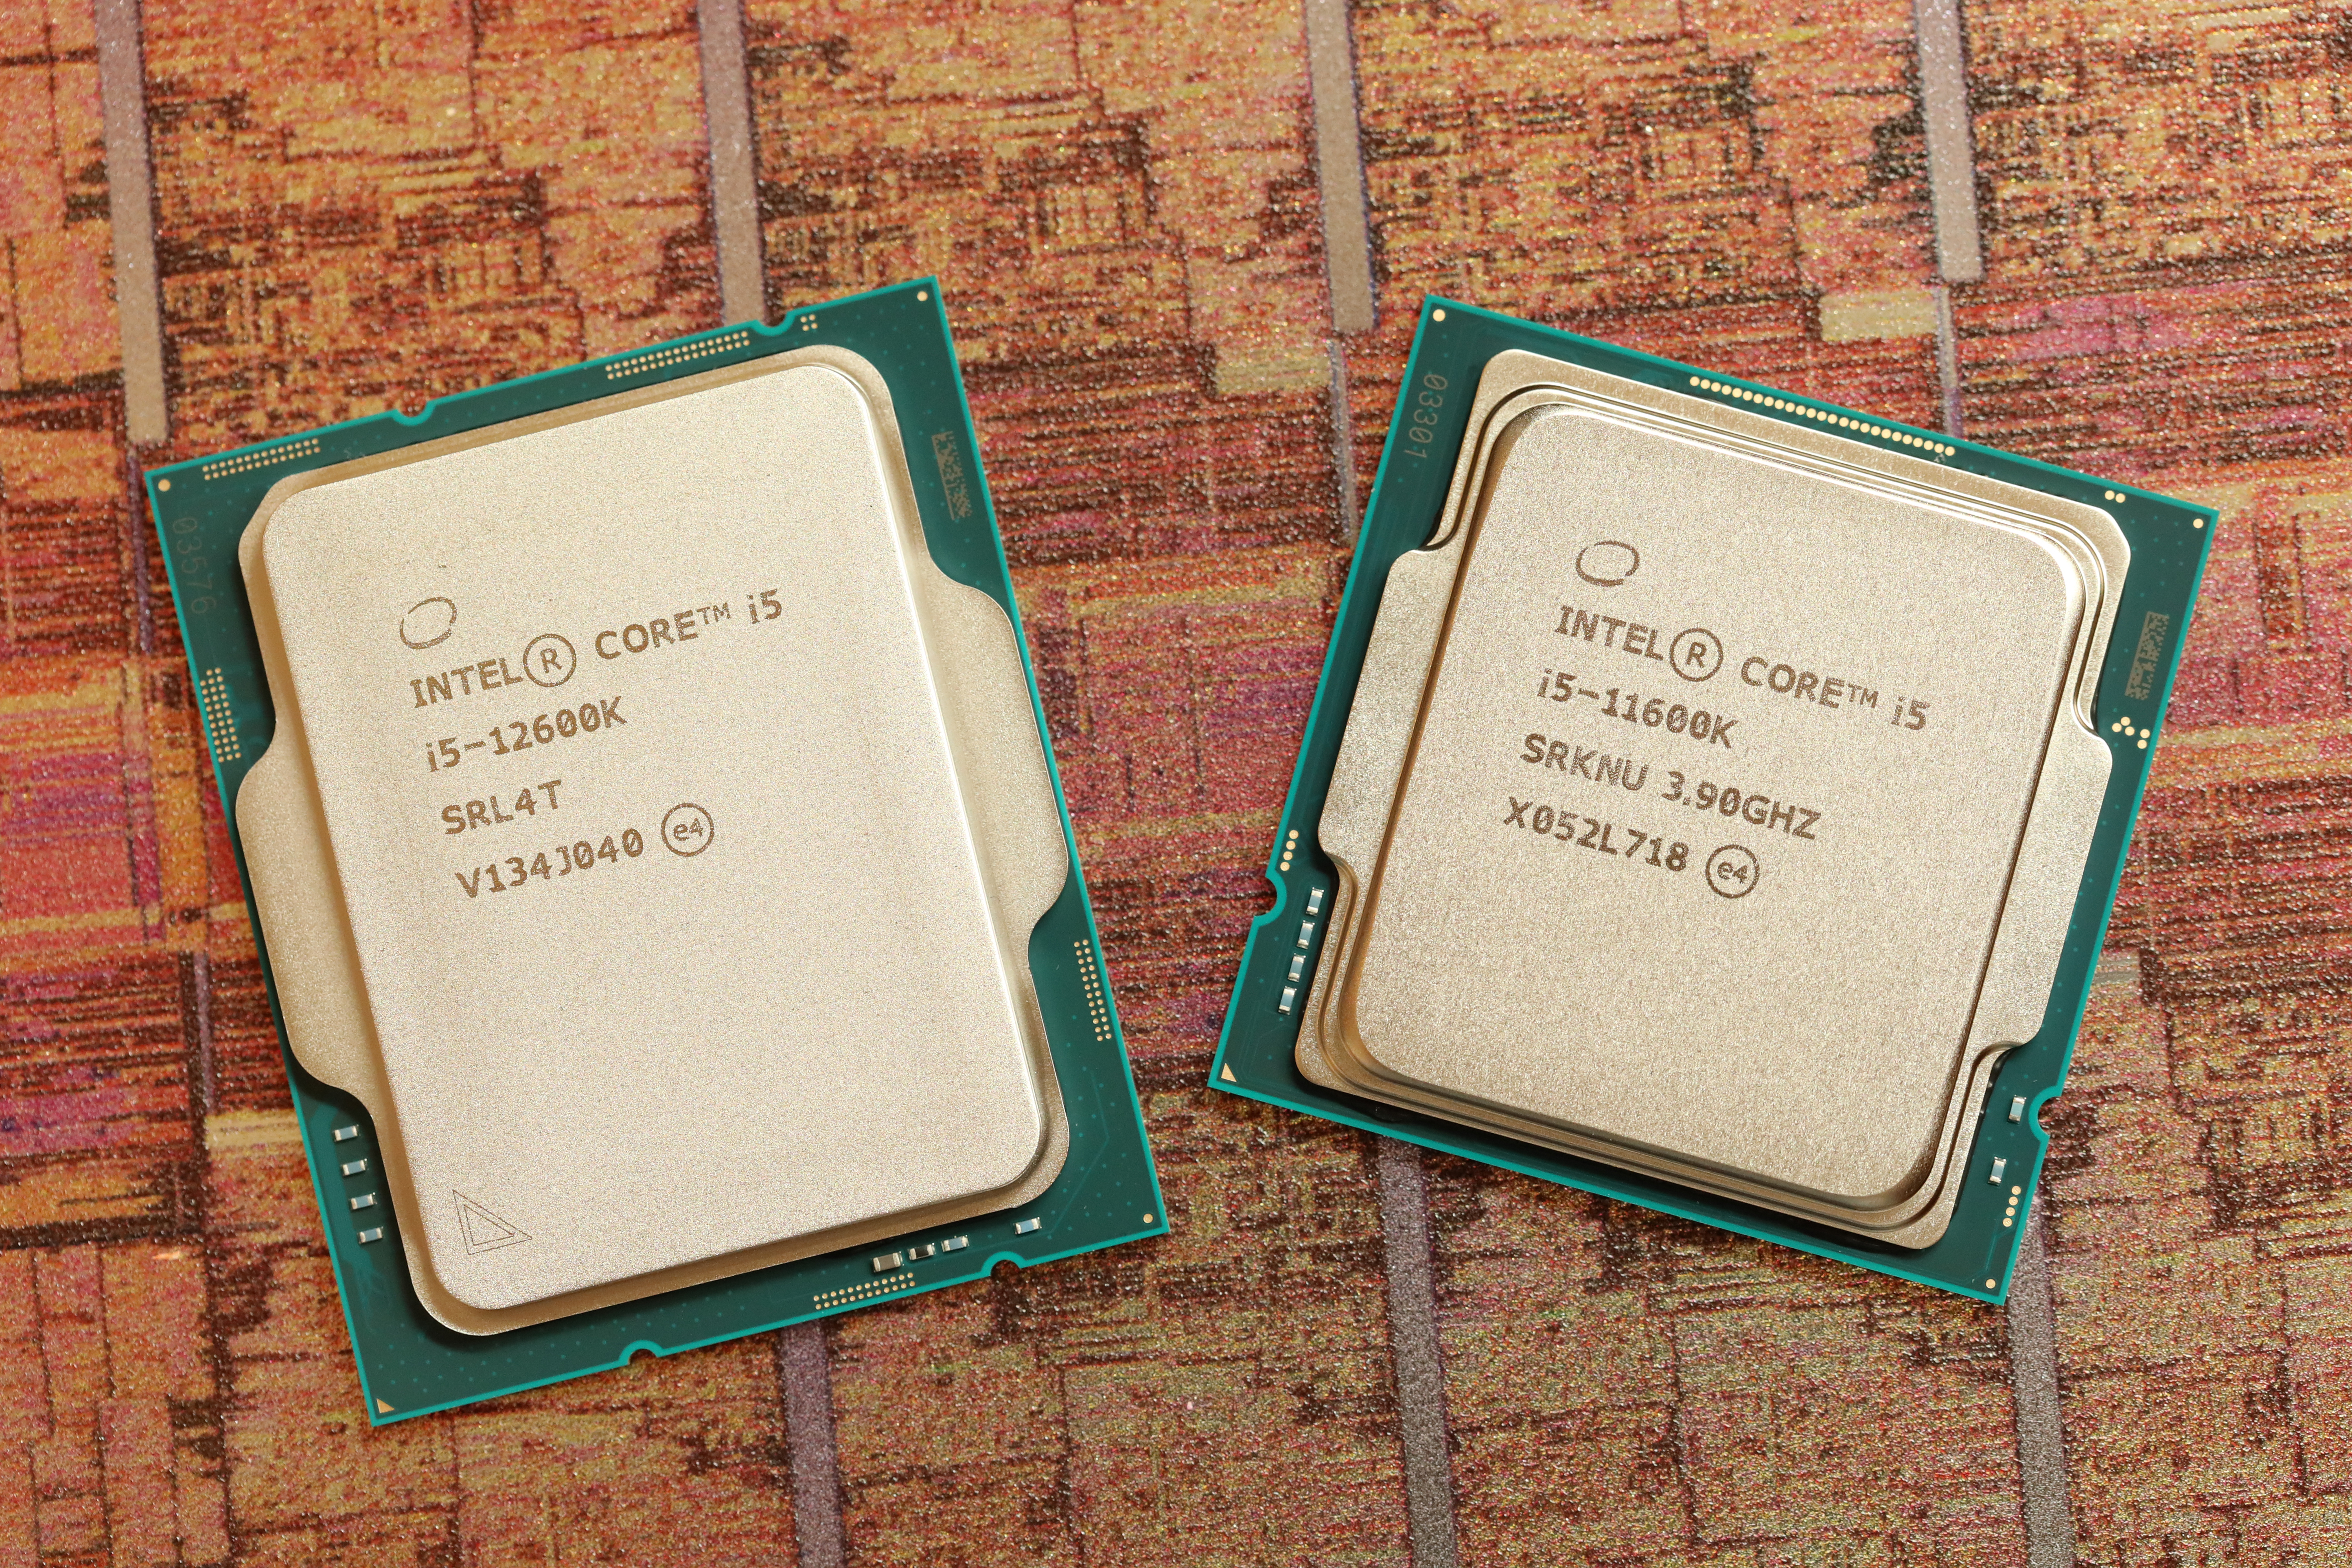 Intel Core i5-12600K review: The new mainstream CPU champ crushes Ryzen  PCWorld